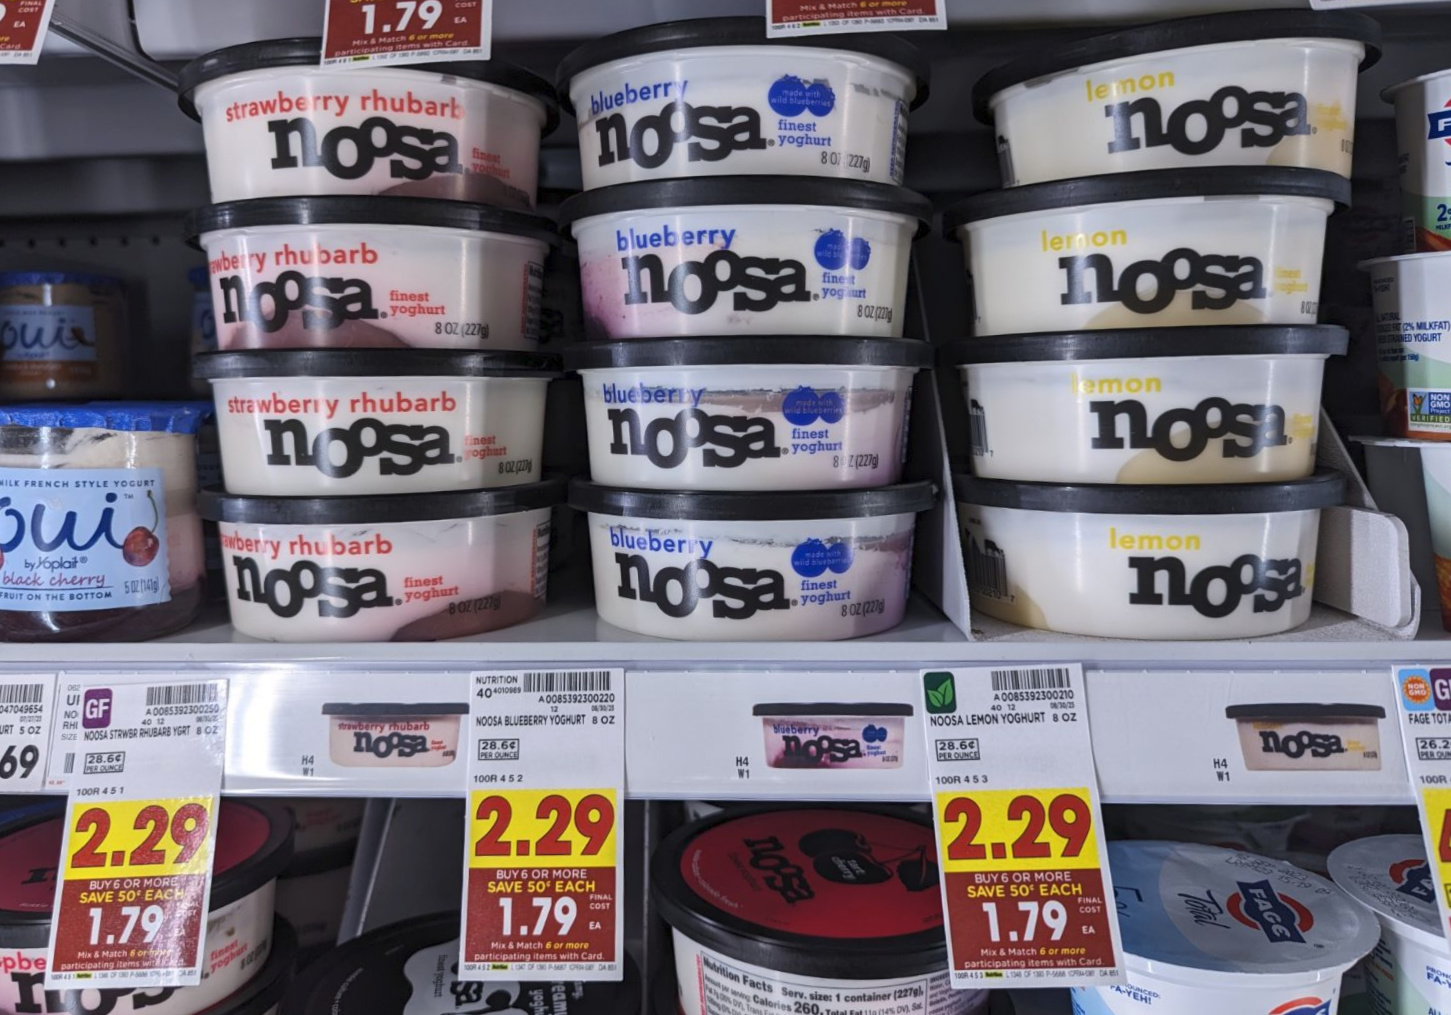 Noosa Yoghurt As Low As $1.54 At Kroger - iHeartKroger